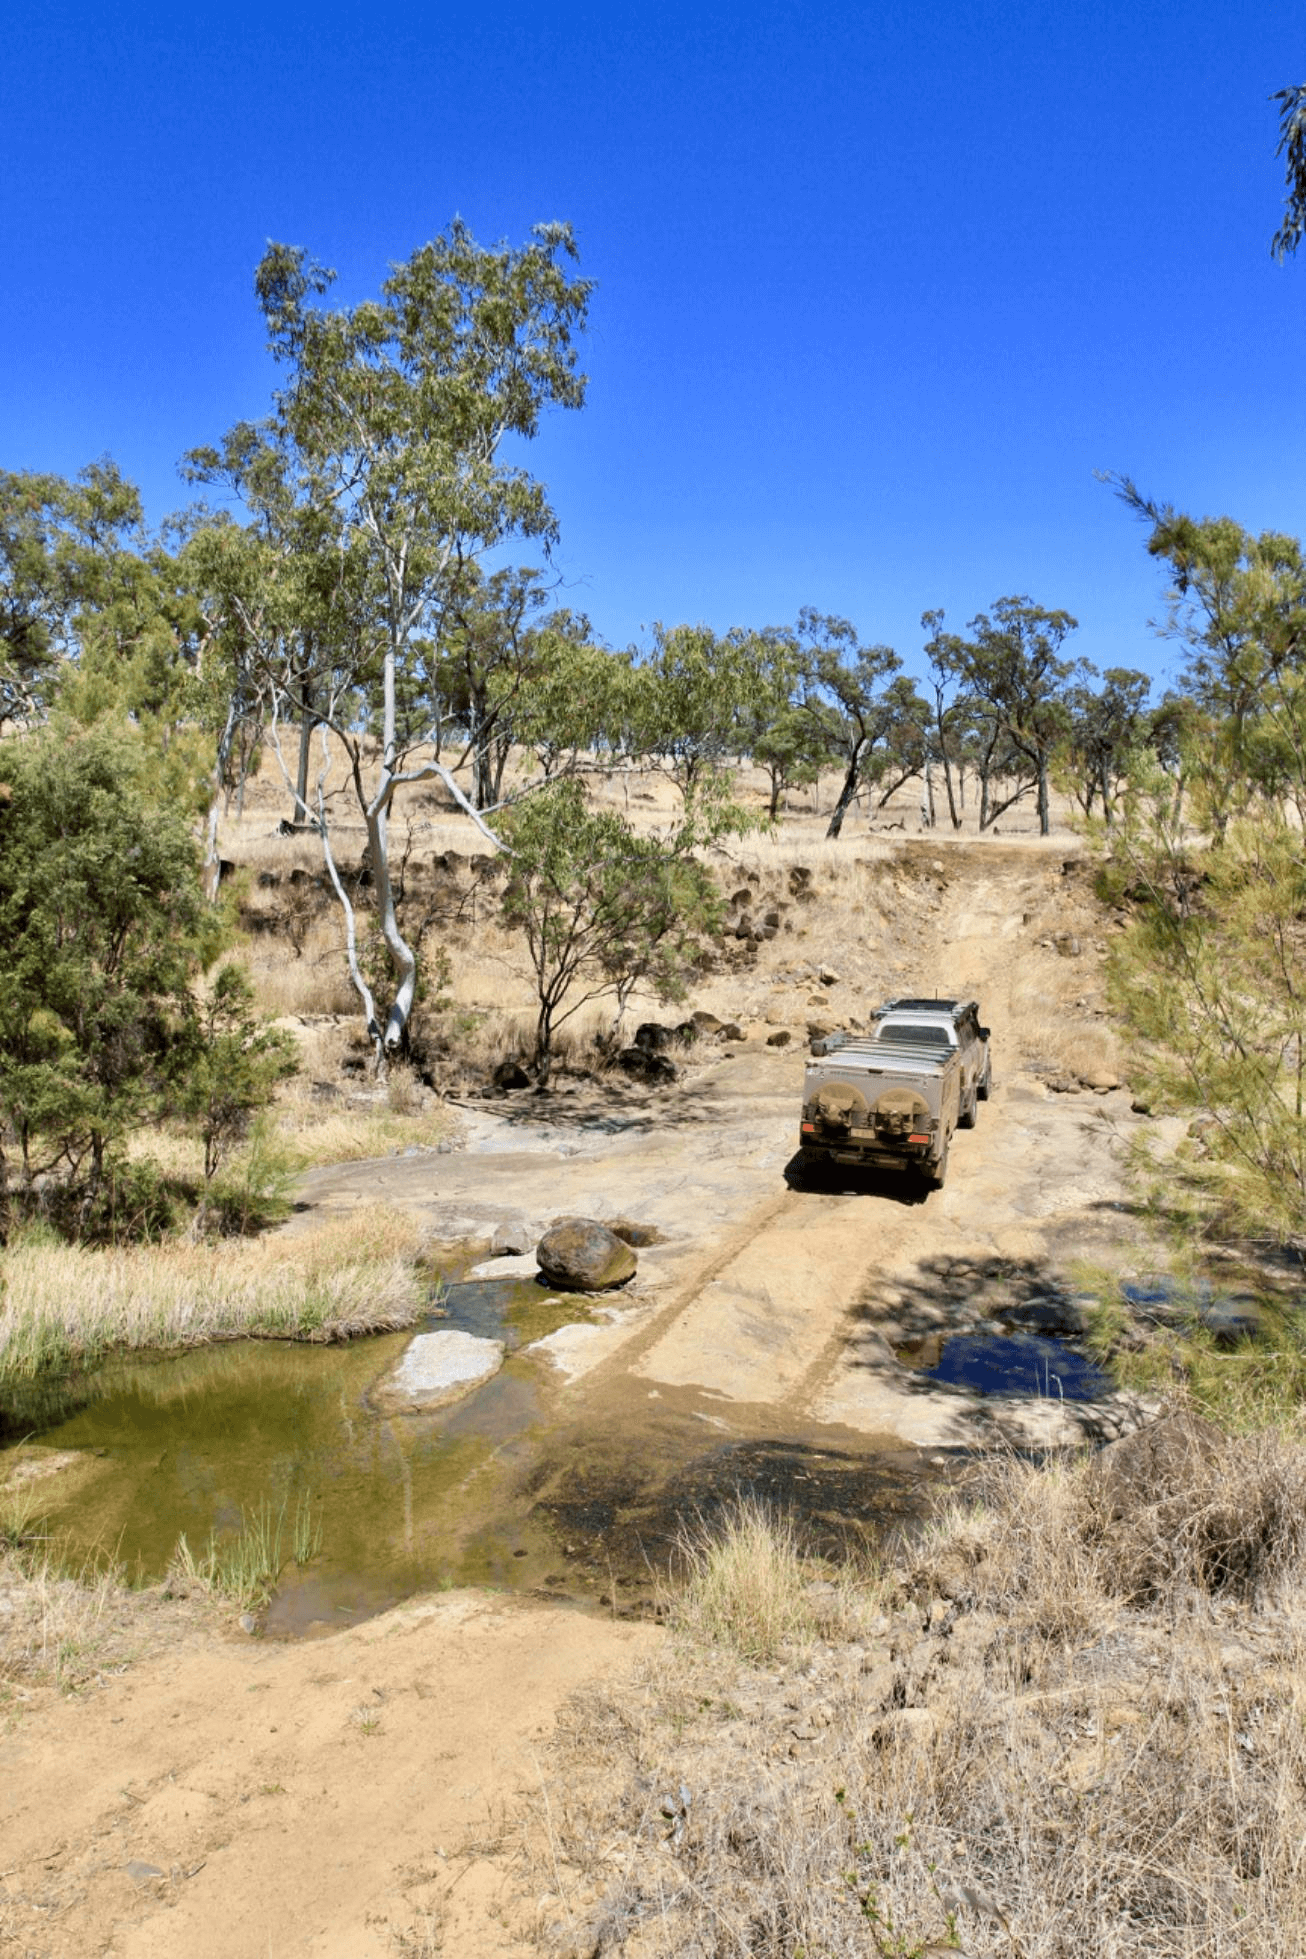 4WD heading up hill in Australian bush.